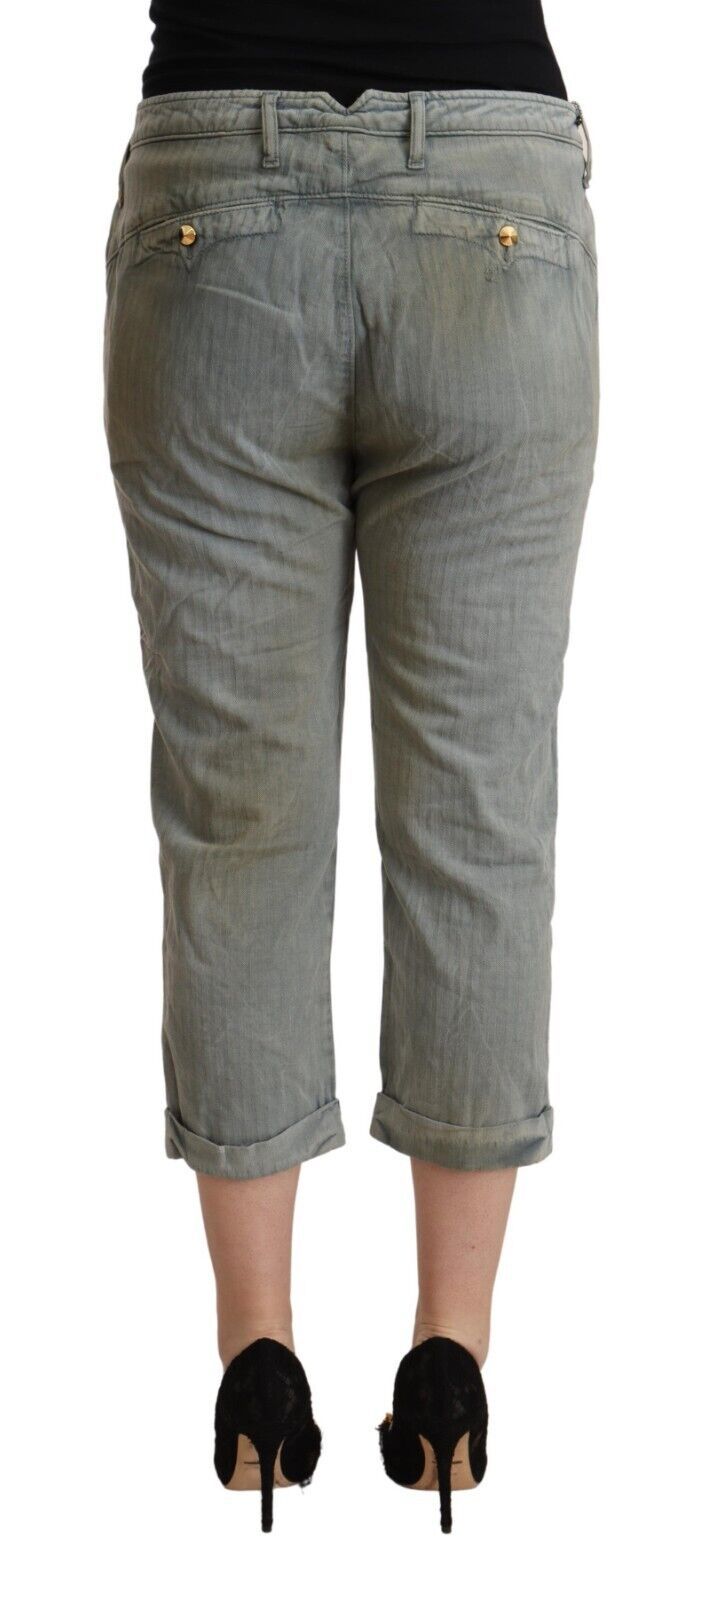 Ciclo grigio 100% di cotone a metà vita pantaloni corti magri